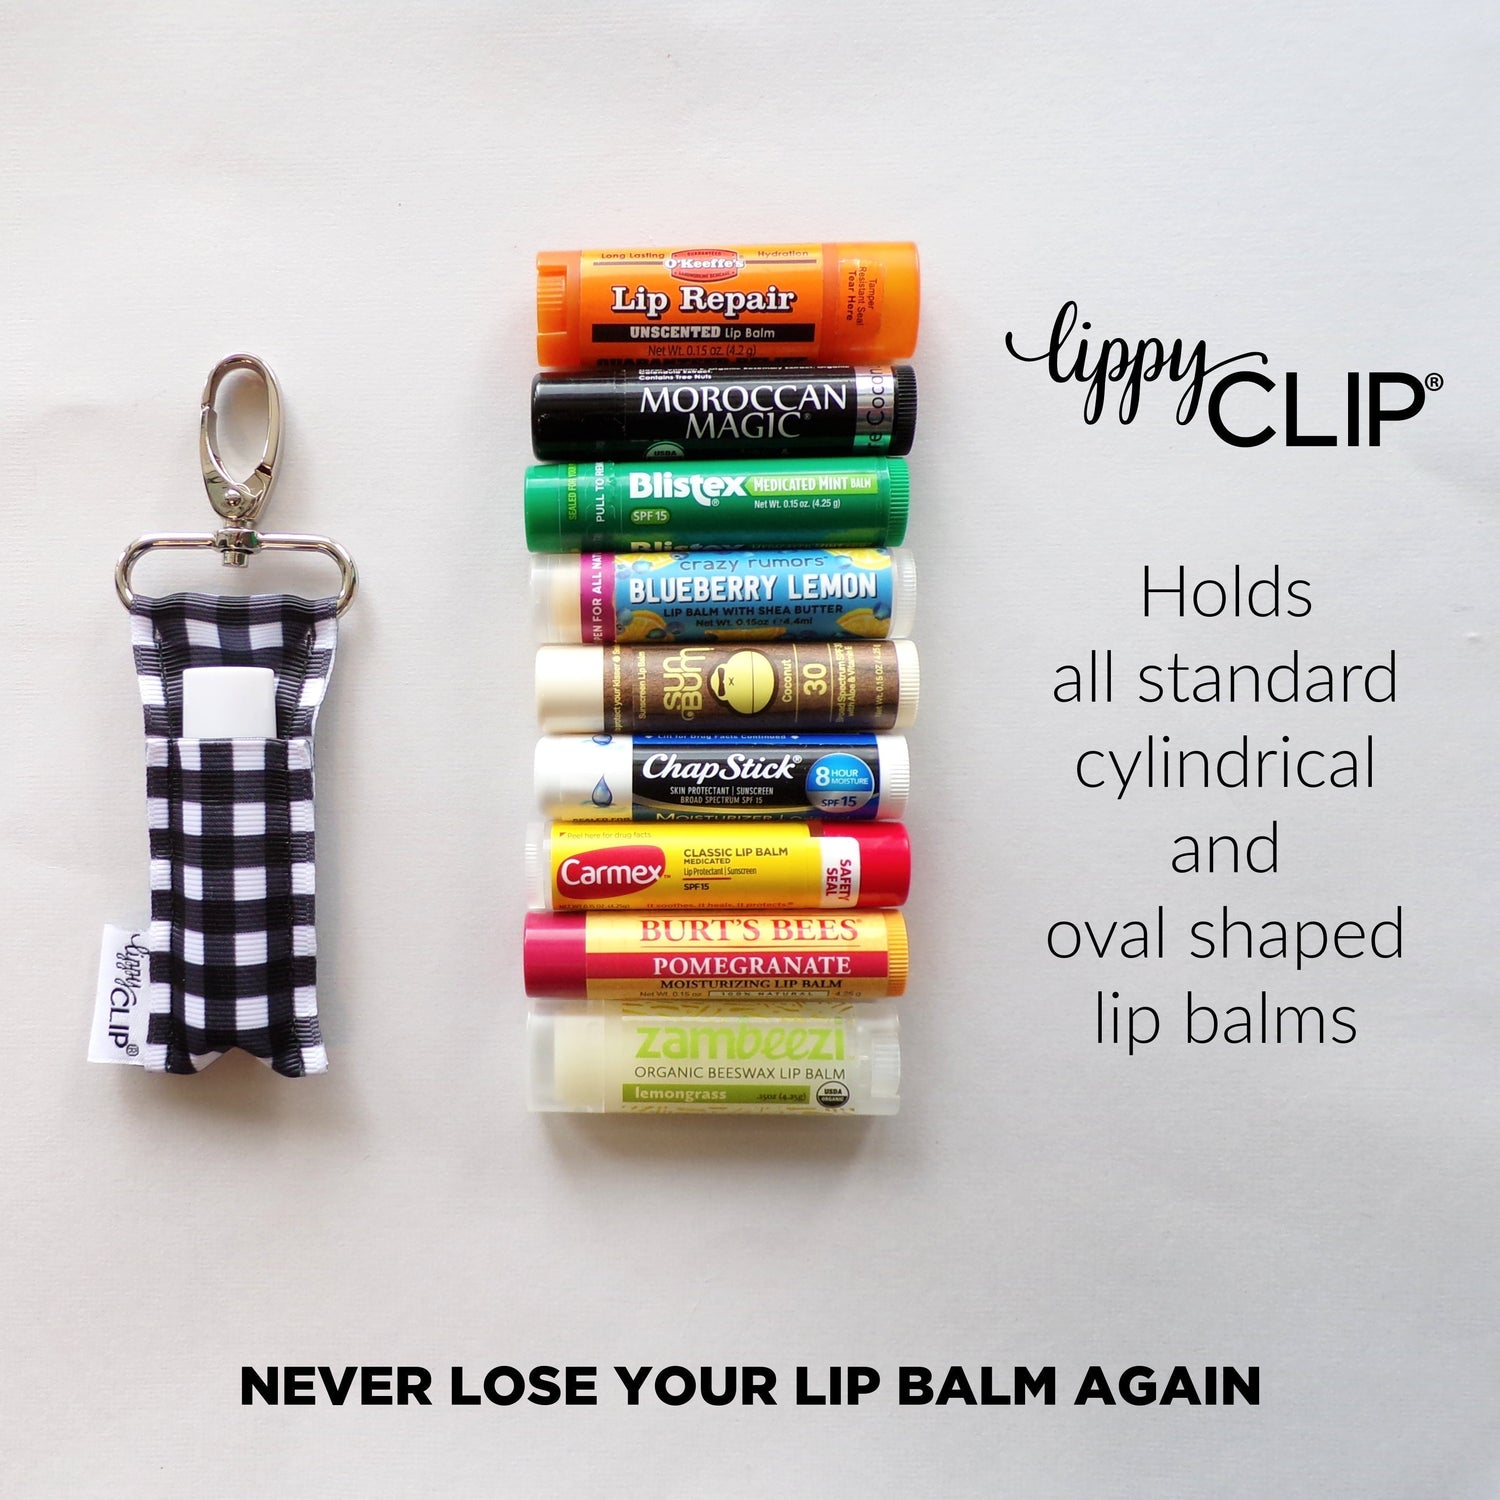 Rainbow Swirls LippyClip® Lip Balm Holder